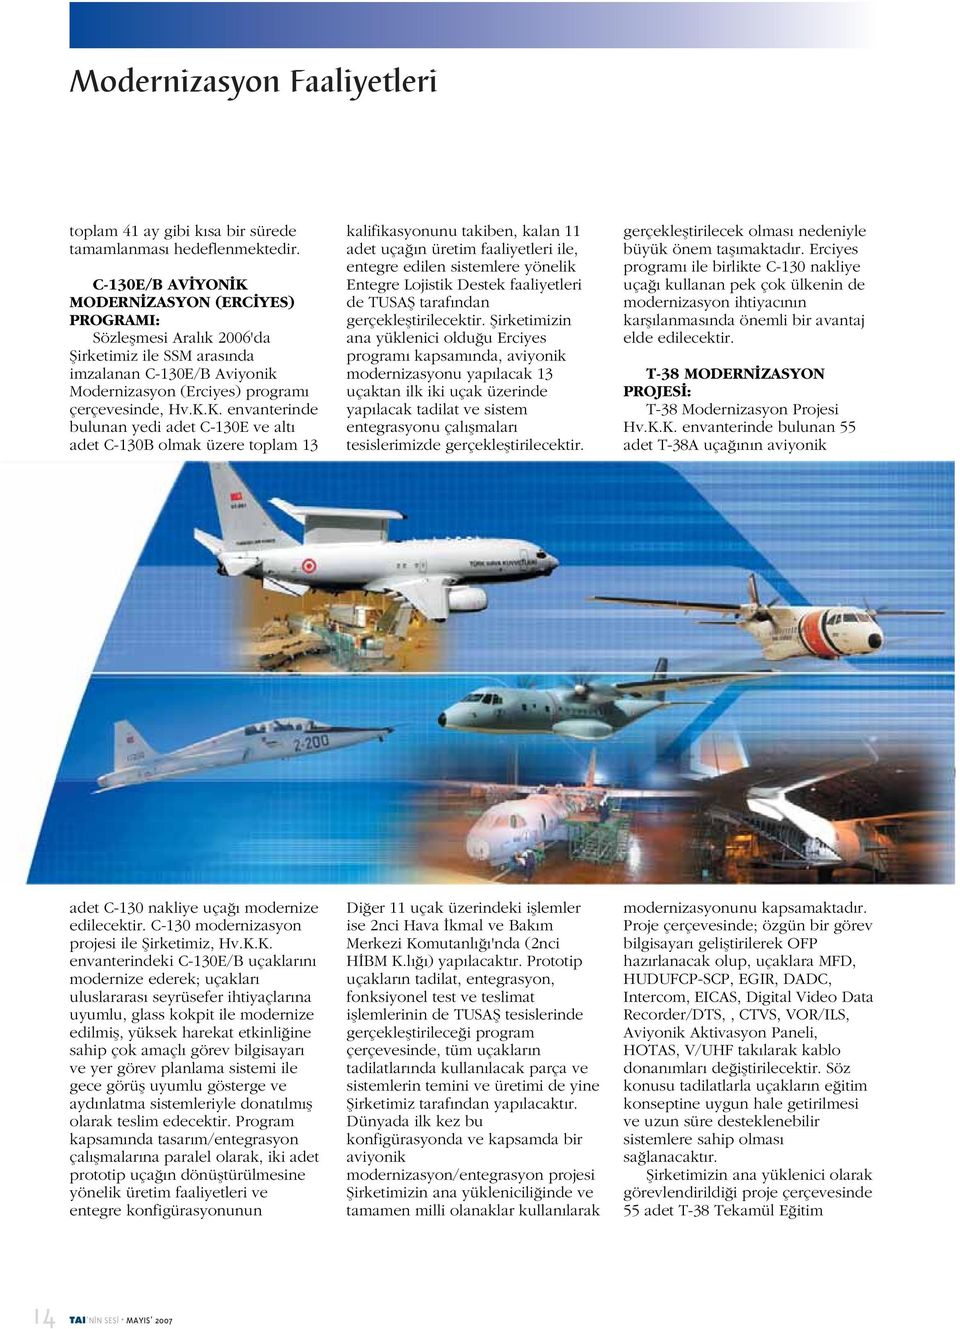 MODERNİZASYON (ERCİYES) PROGRAMI: Sözleşmesi Aralık 2006'da Şirketimiz ile SSM arasında imzalanan C-130E/B Aviyonik Modernizasyon (Erciyes) programı çerçevesinde, Hv.K.